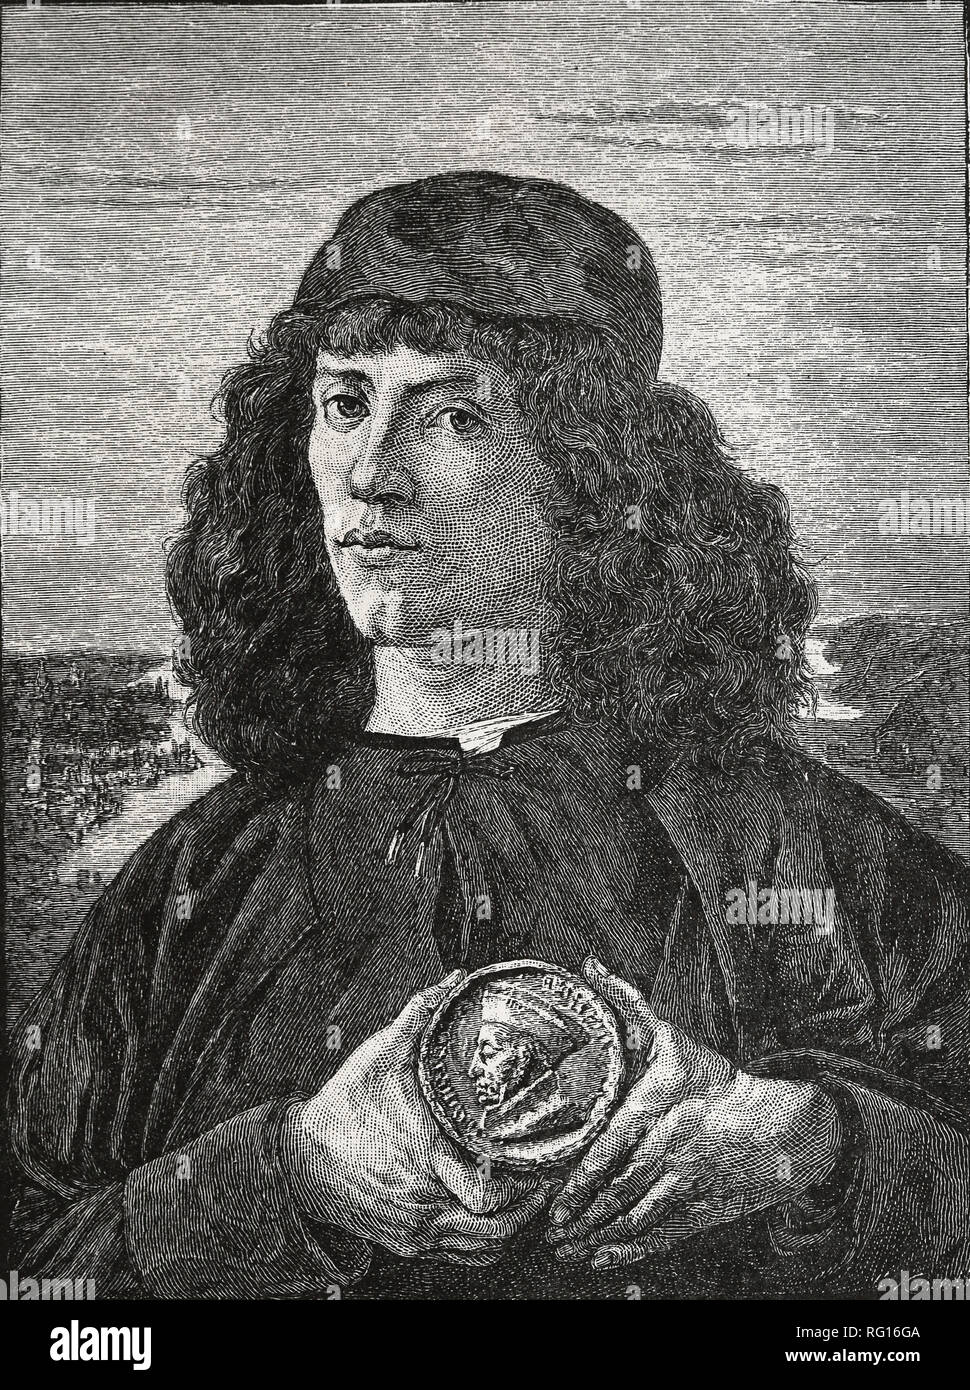 Portrait d'un homme avec une médaille de Cosme l'ancien, 16 ème siècle. Peinture de Sandro Botticelli. Copie d'une gravure. Banque D'Images